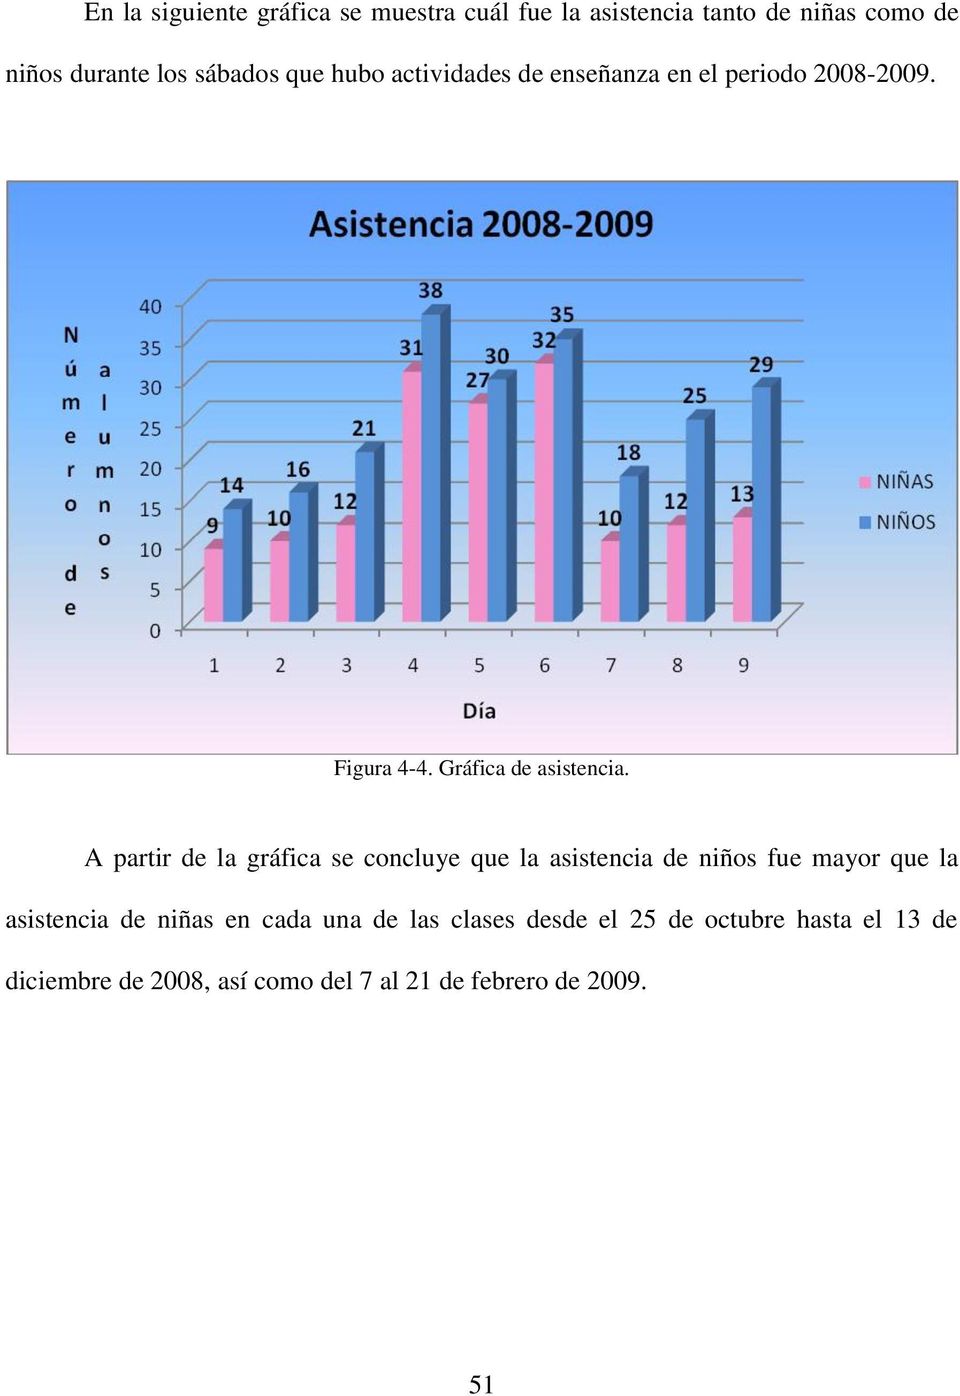 A partir de la gráfica se concluye que la asistencia de niños fue mayor que la asistencia de niñas en cada